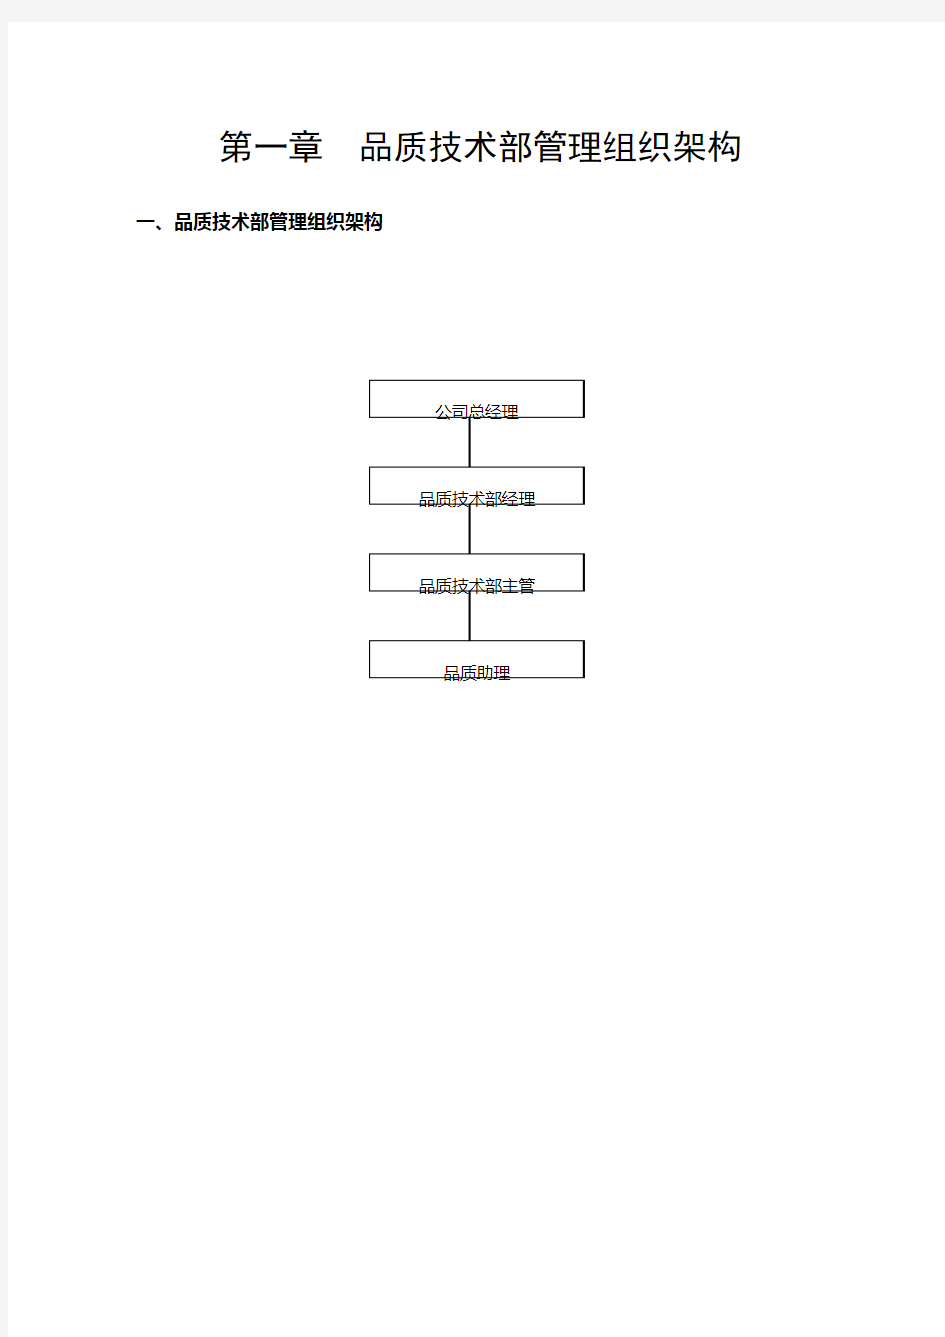 (精选)深圳市保利物业管理有限公司全套体系文件品质管理手册